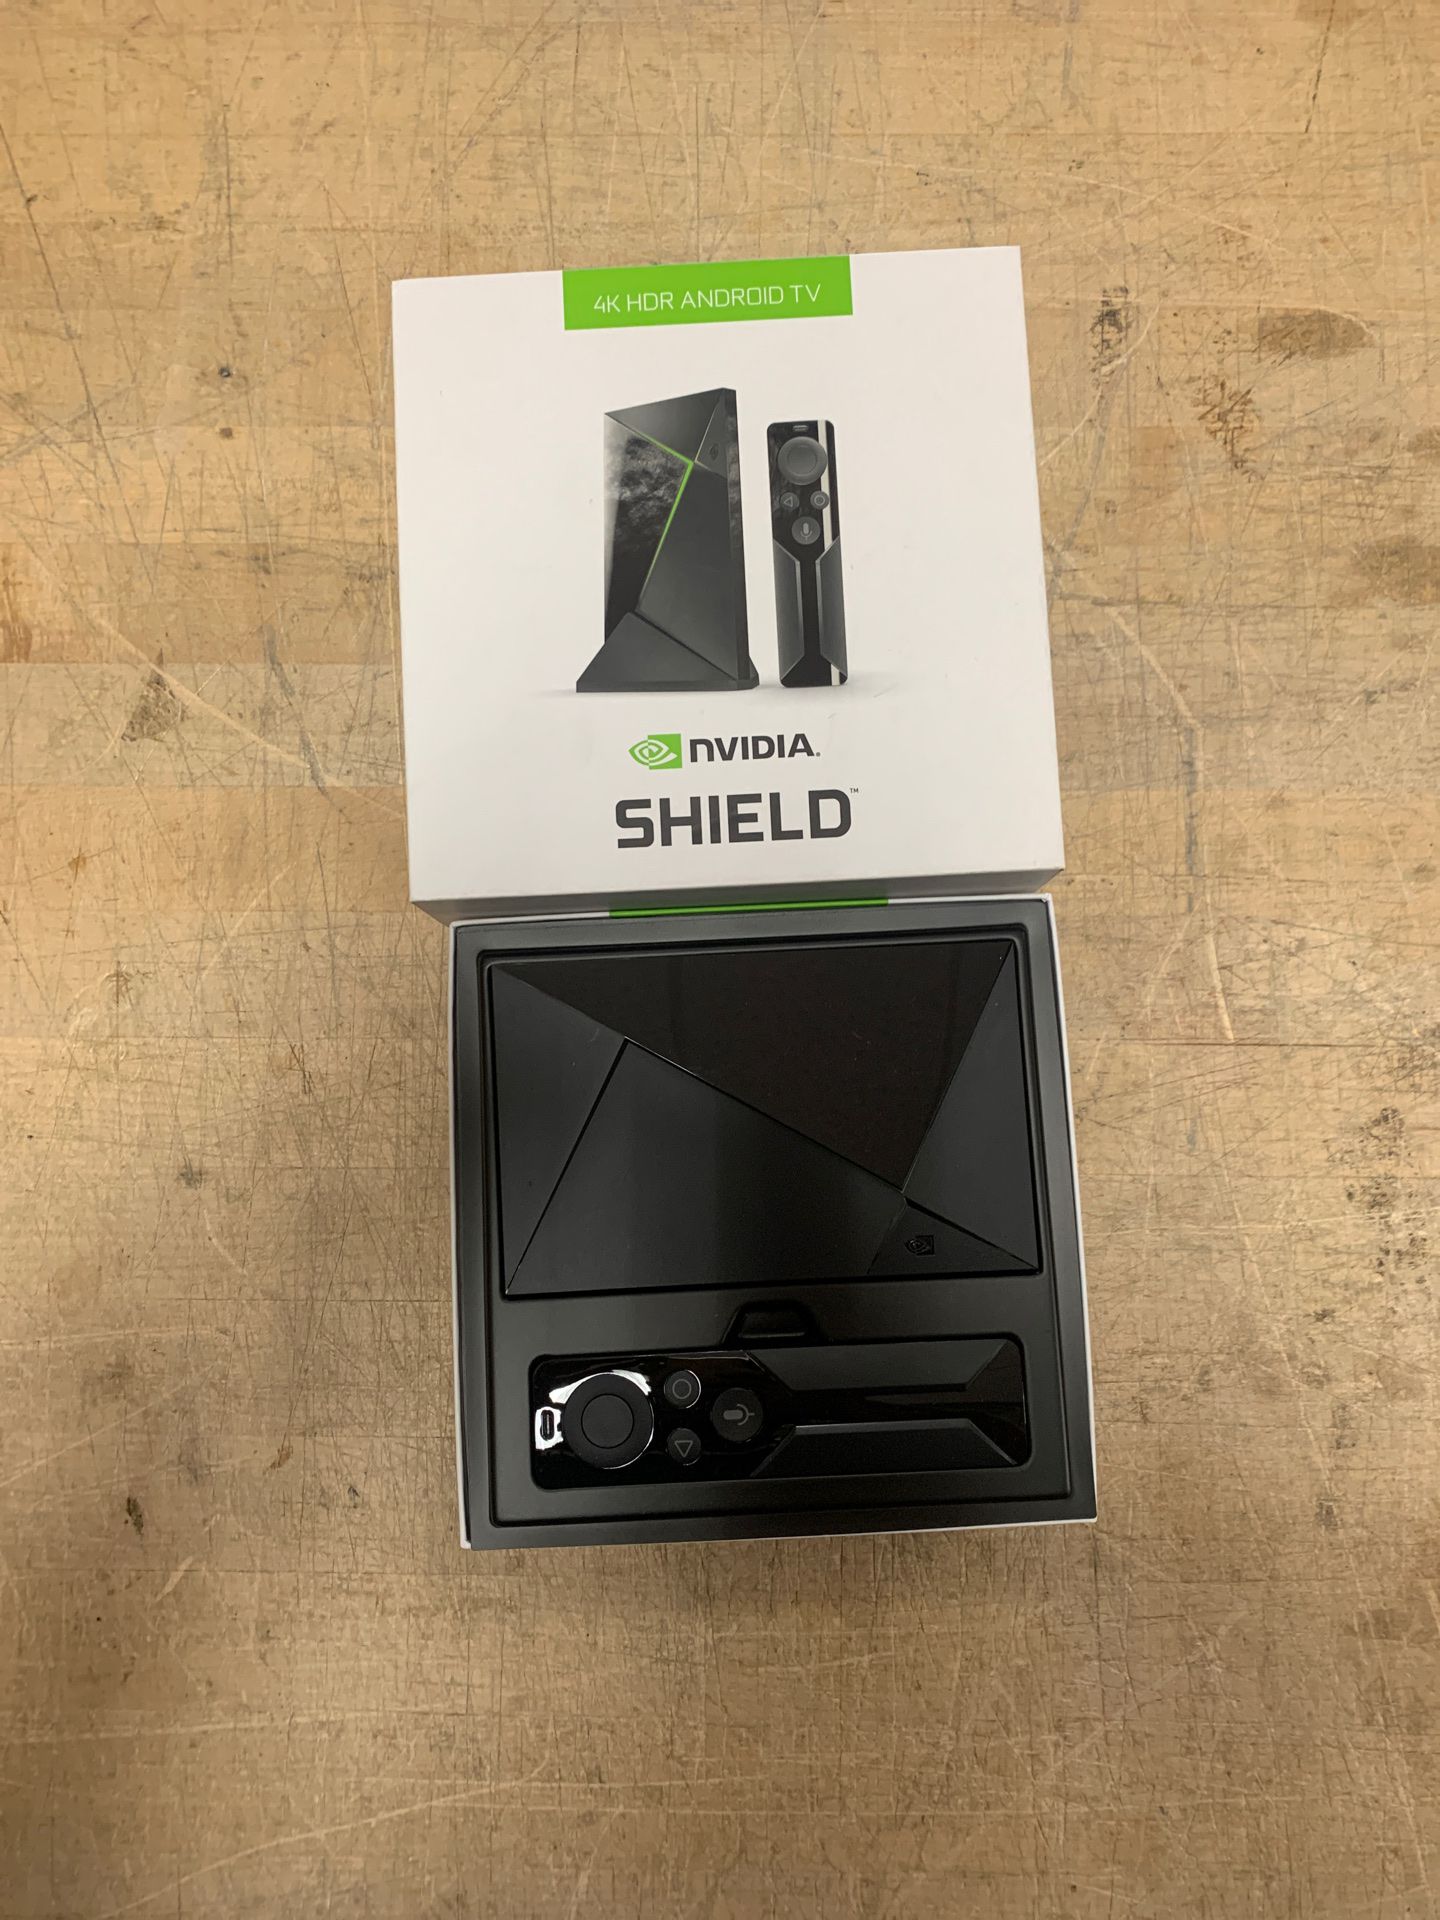 Nvidia Shield Streaming Box